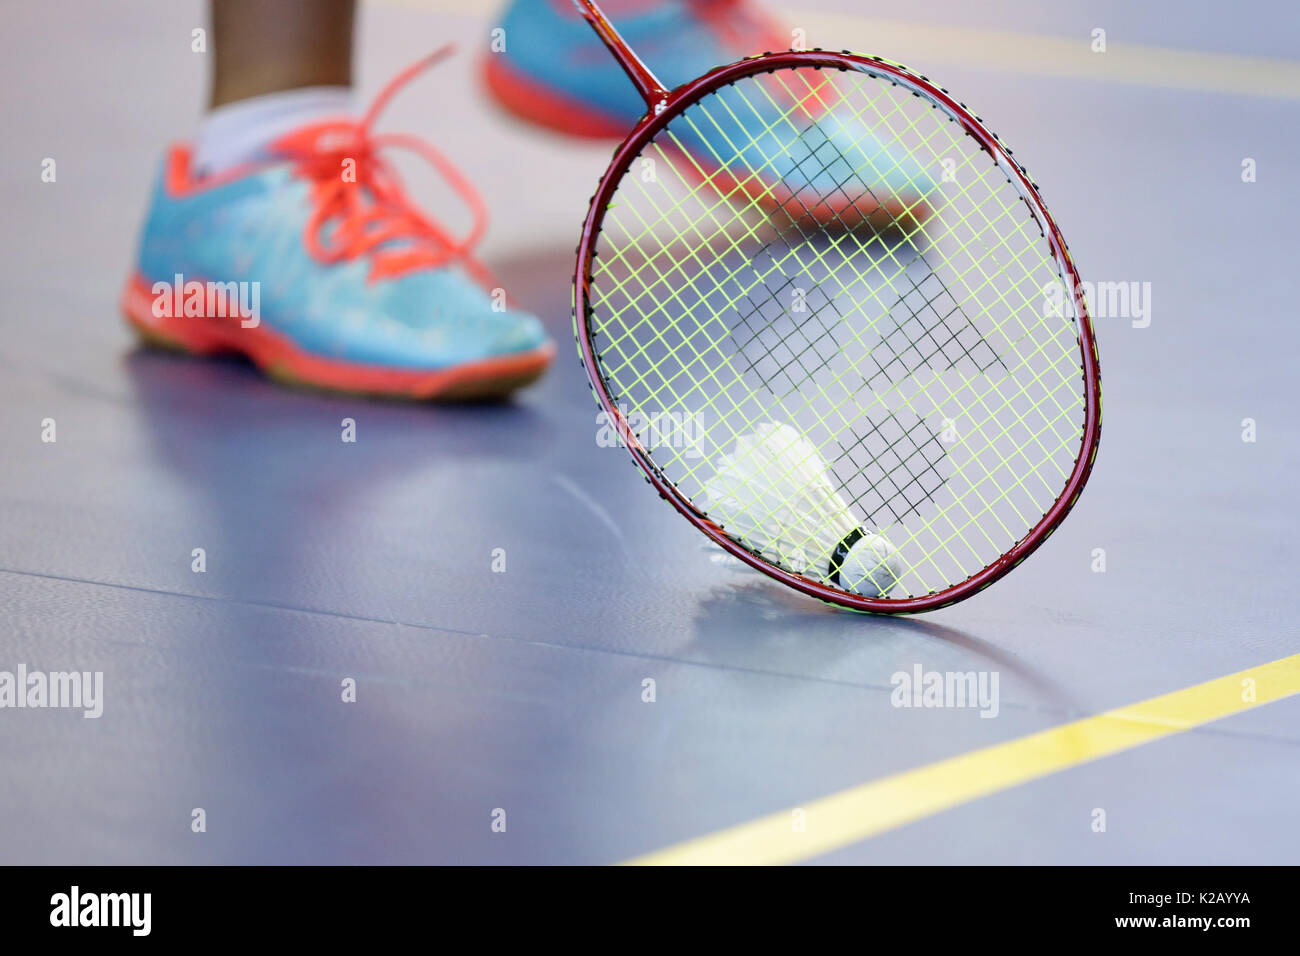 Raquette de badminton avec volant et les jambes du joueur sur le court  Photo Stock - Alamy